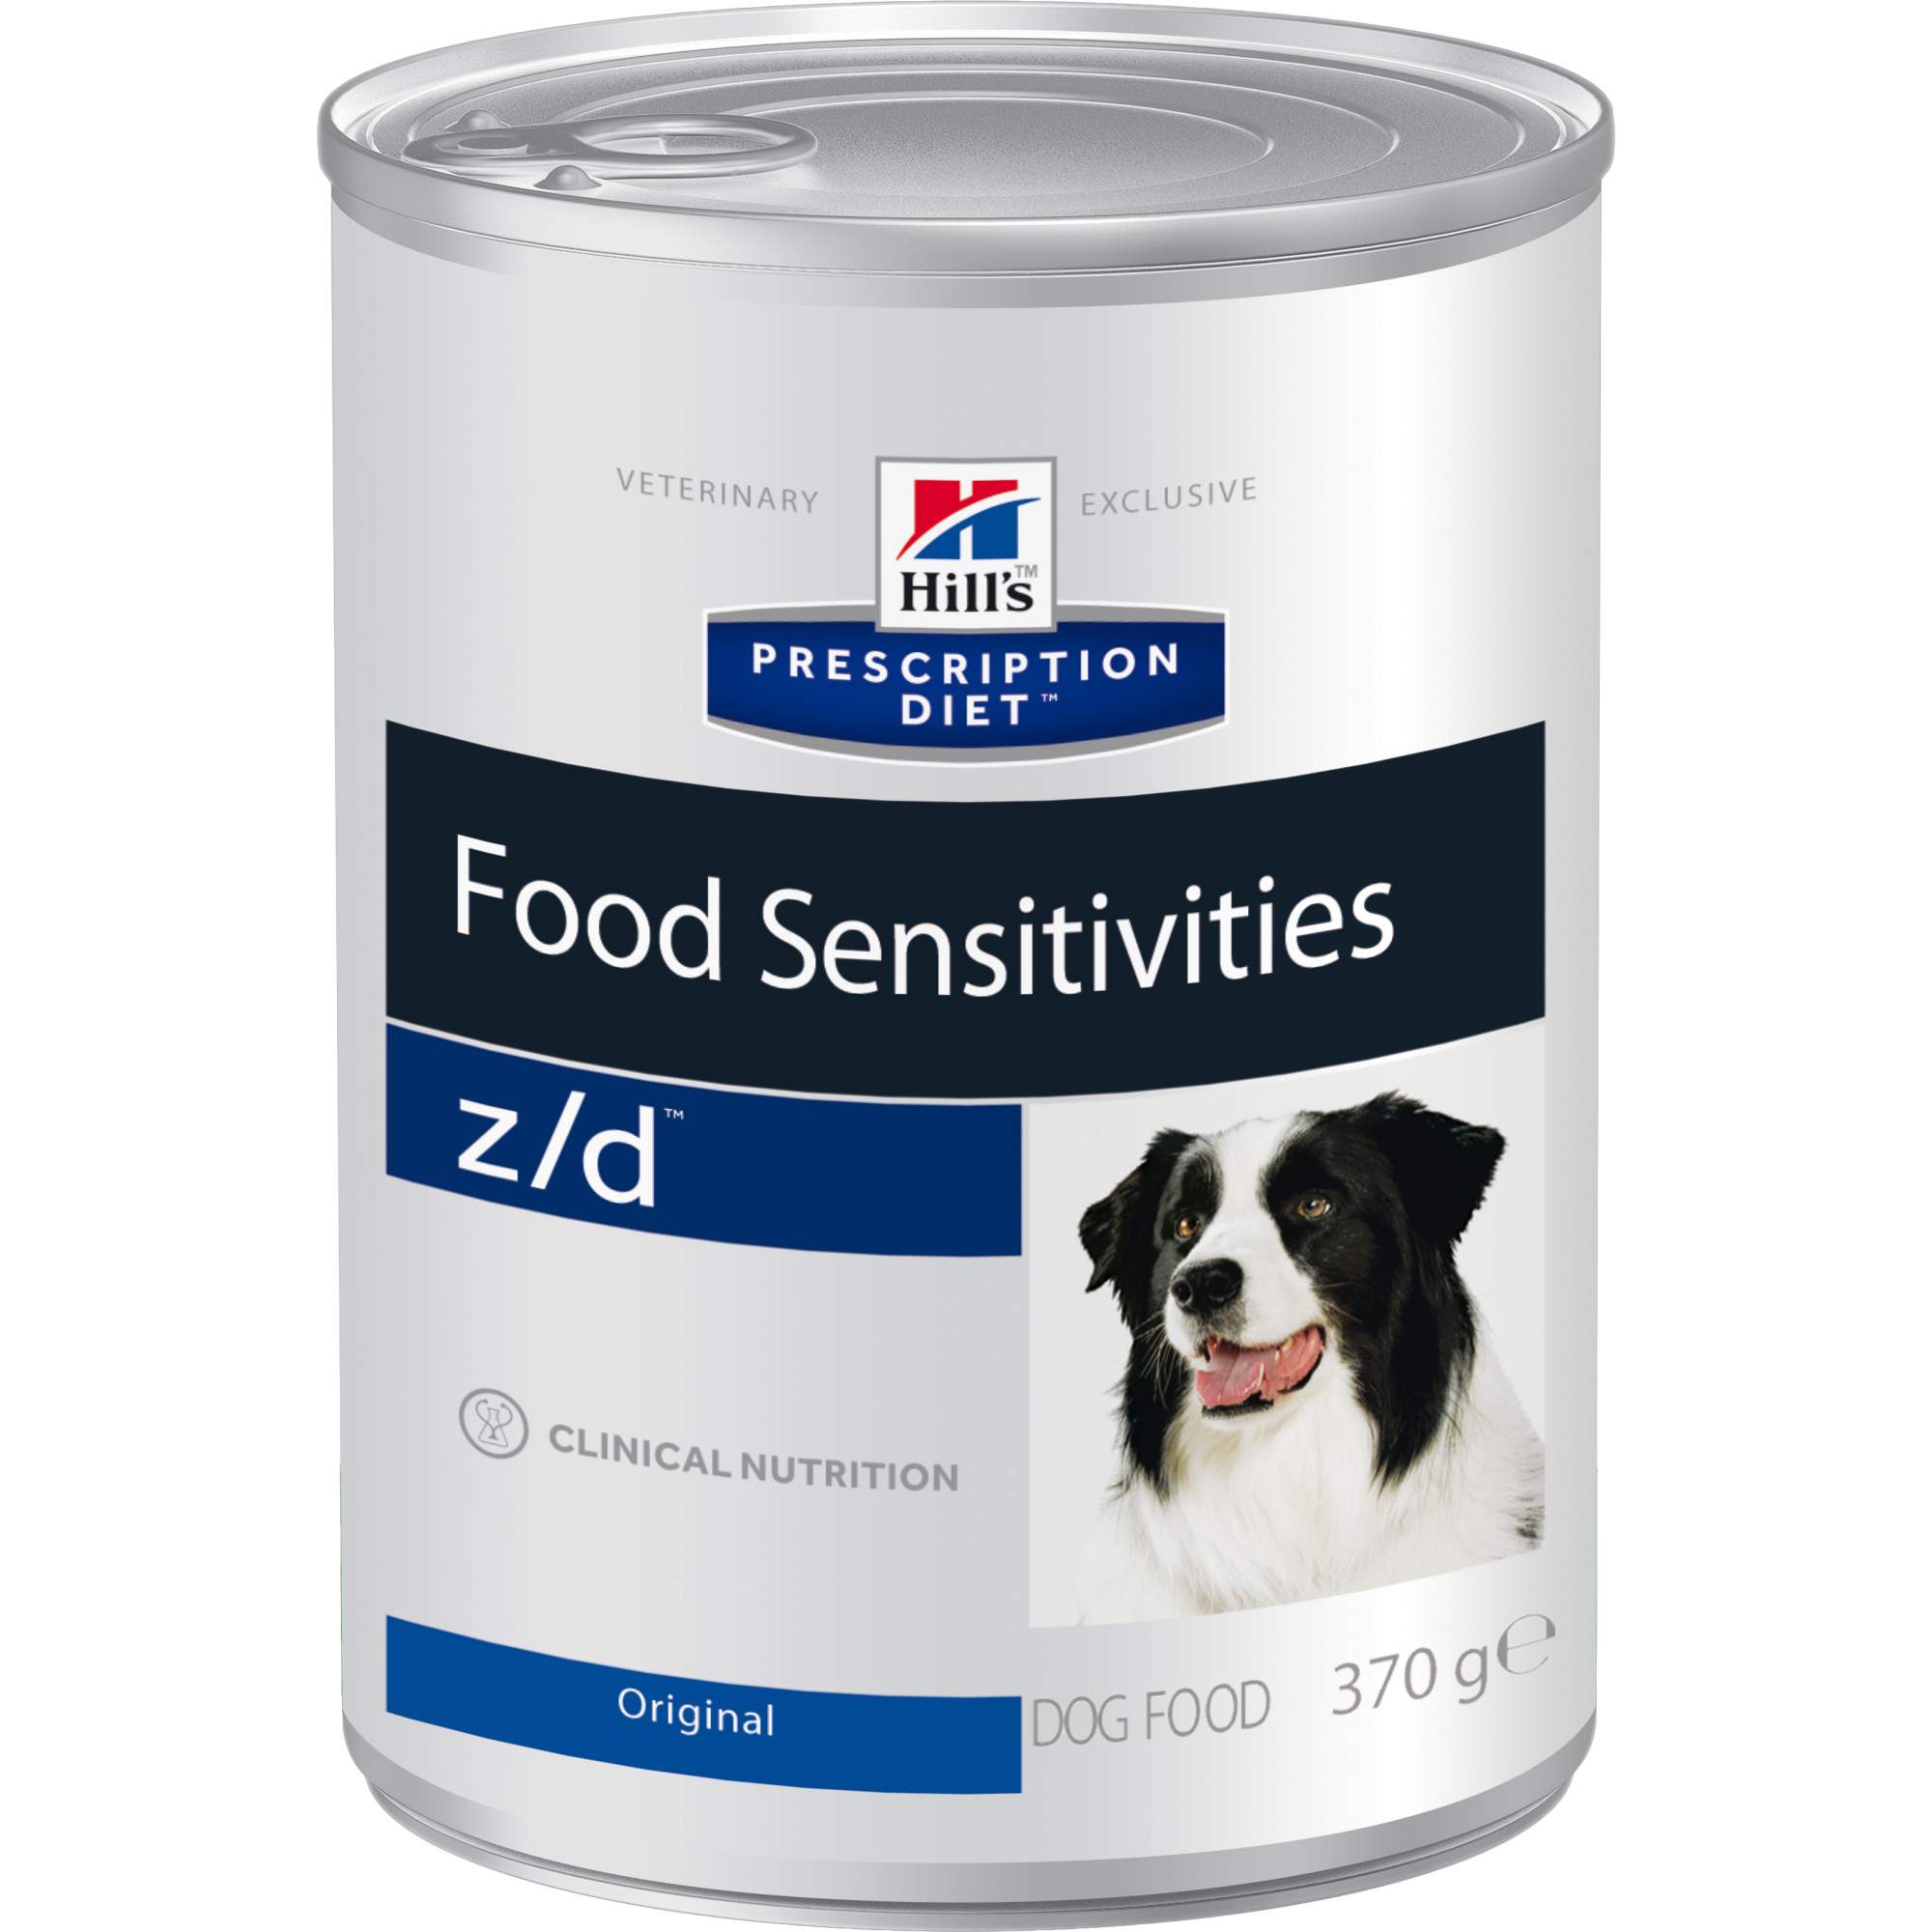 Консервы для собак Hill's Prescription Diet Food Sensitivities z/d, мясо, 370г